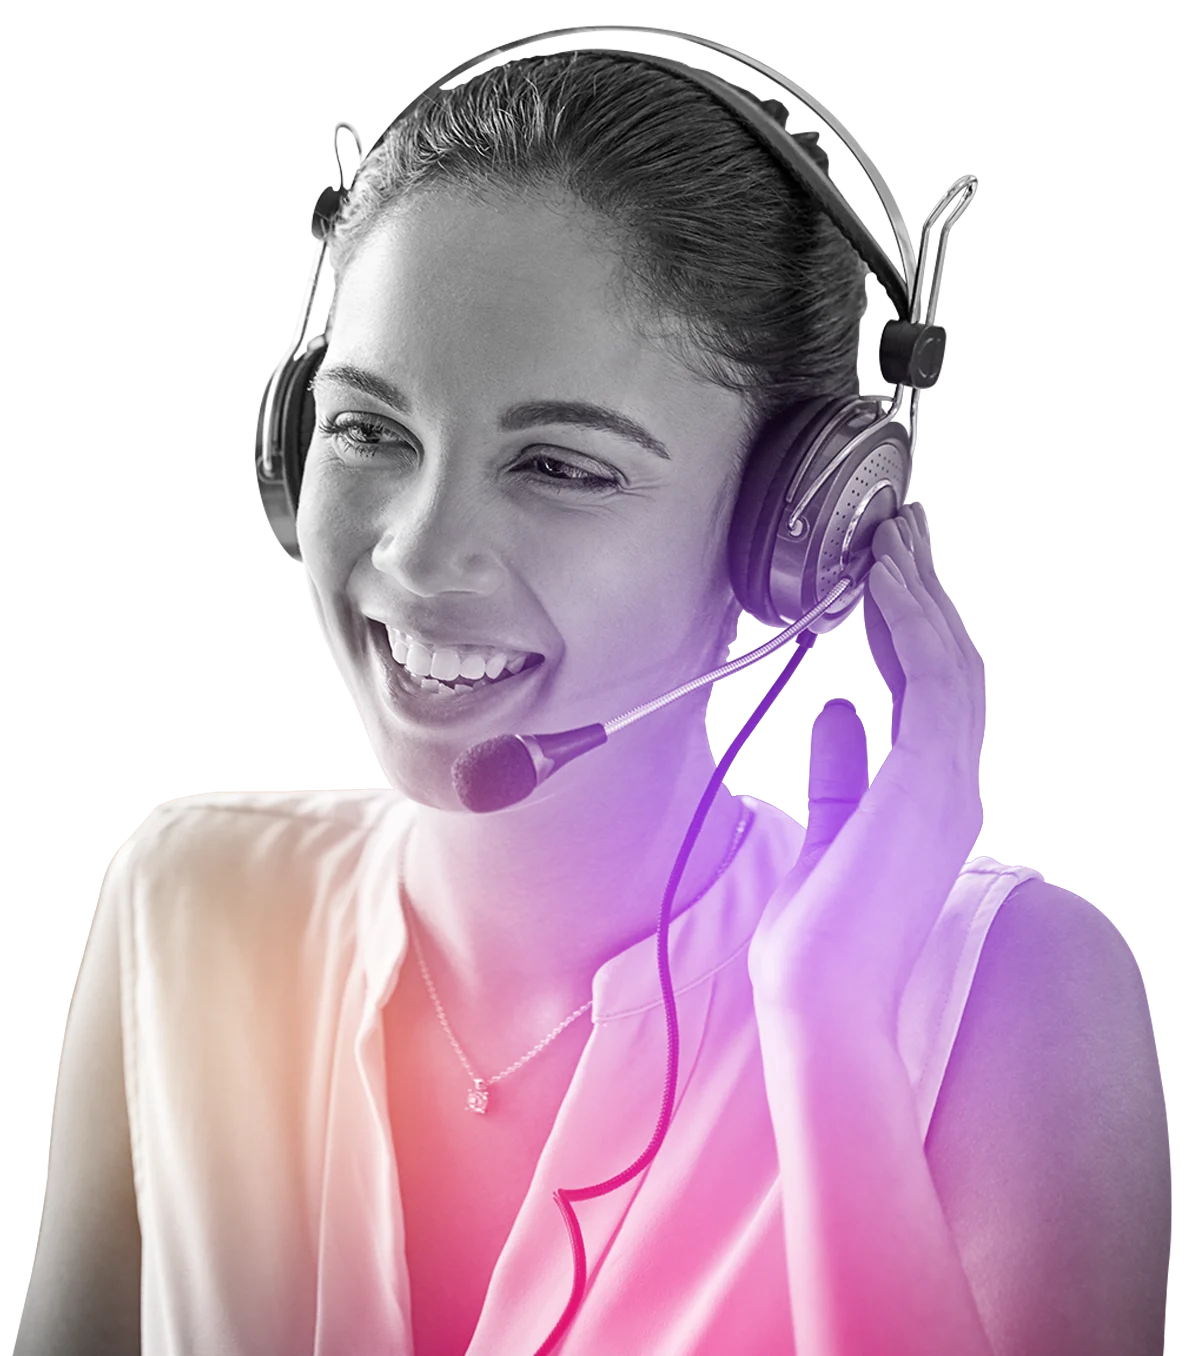 Woman smiling wearing headset